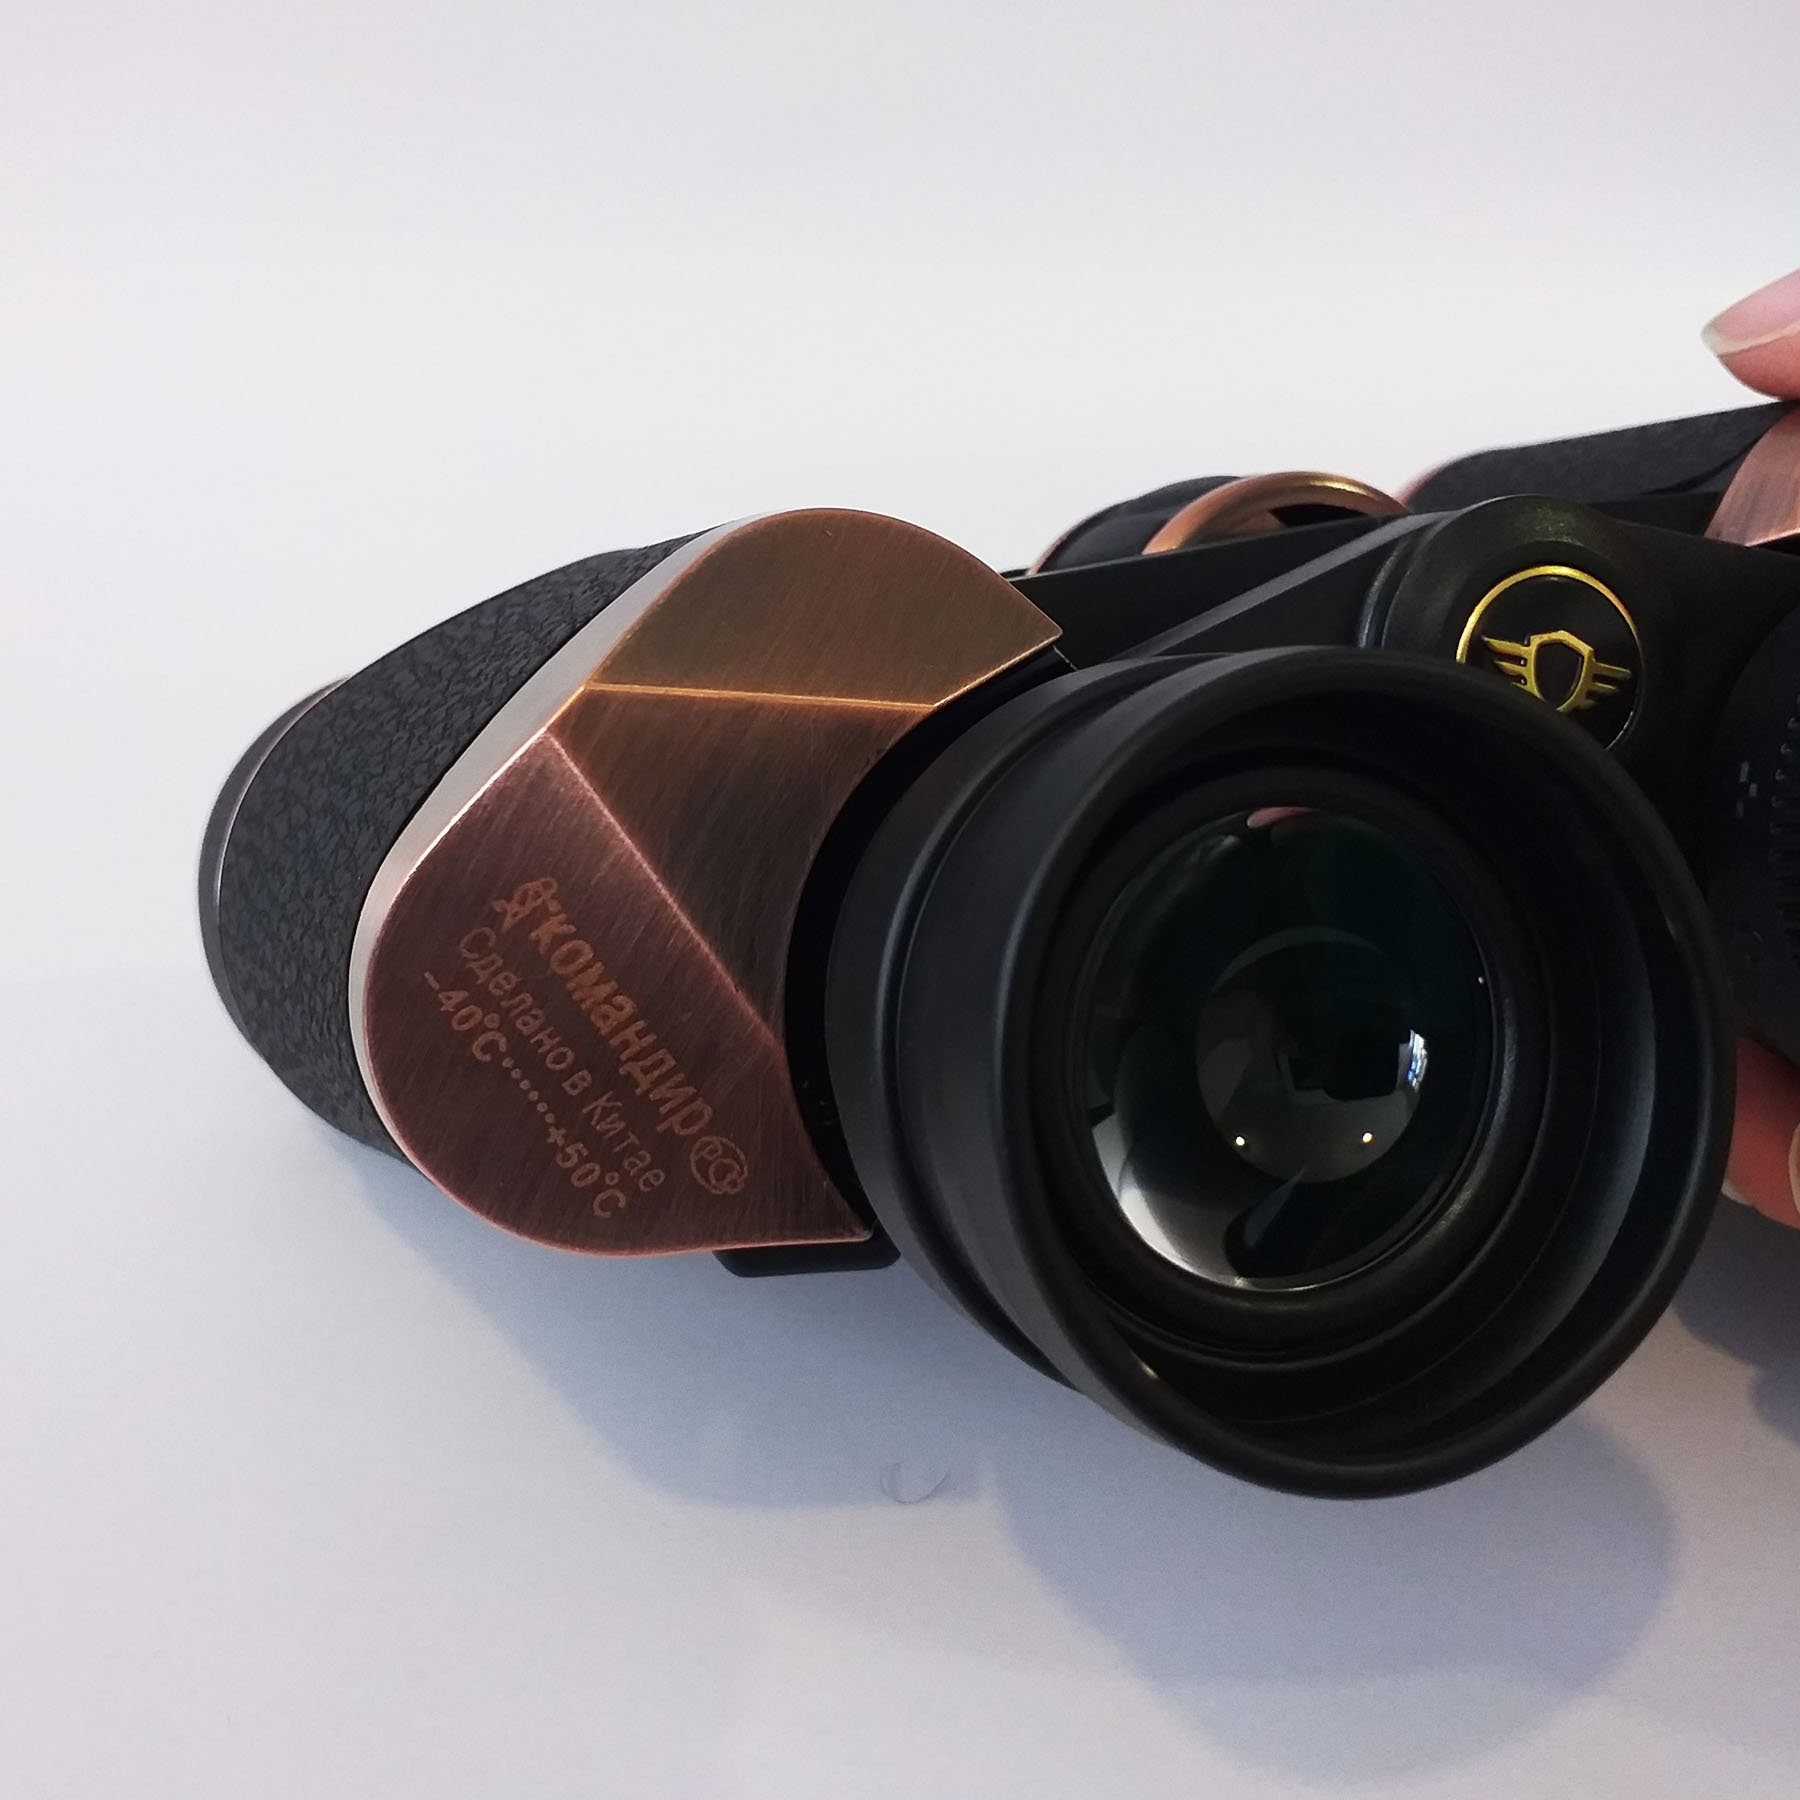 دوربین دوچشمی کماهانپ مدل Optics 12X45